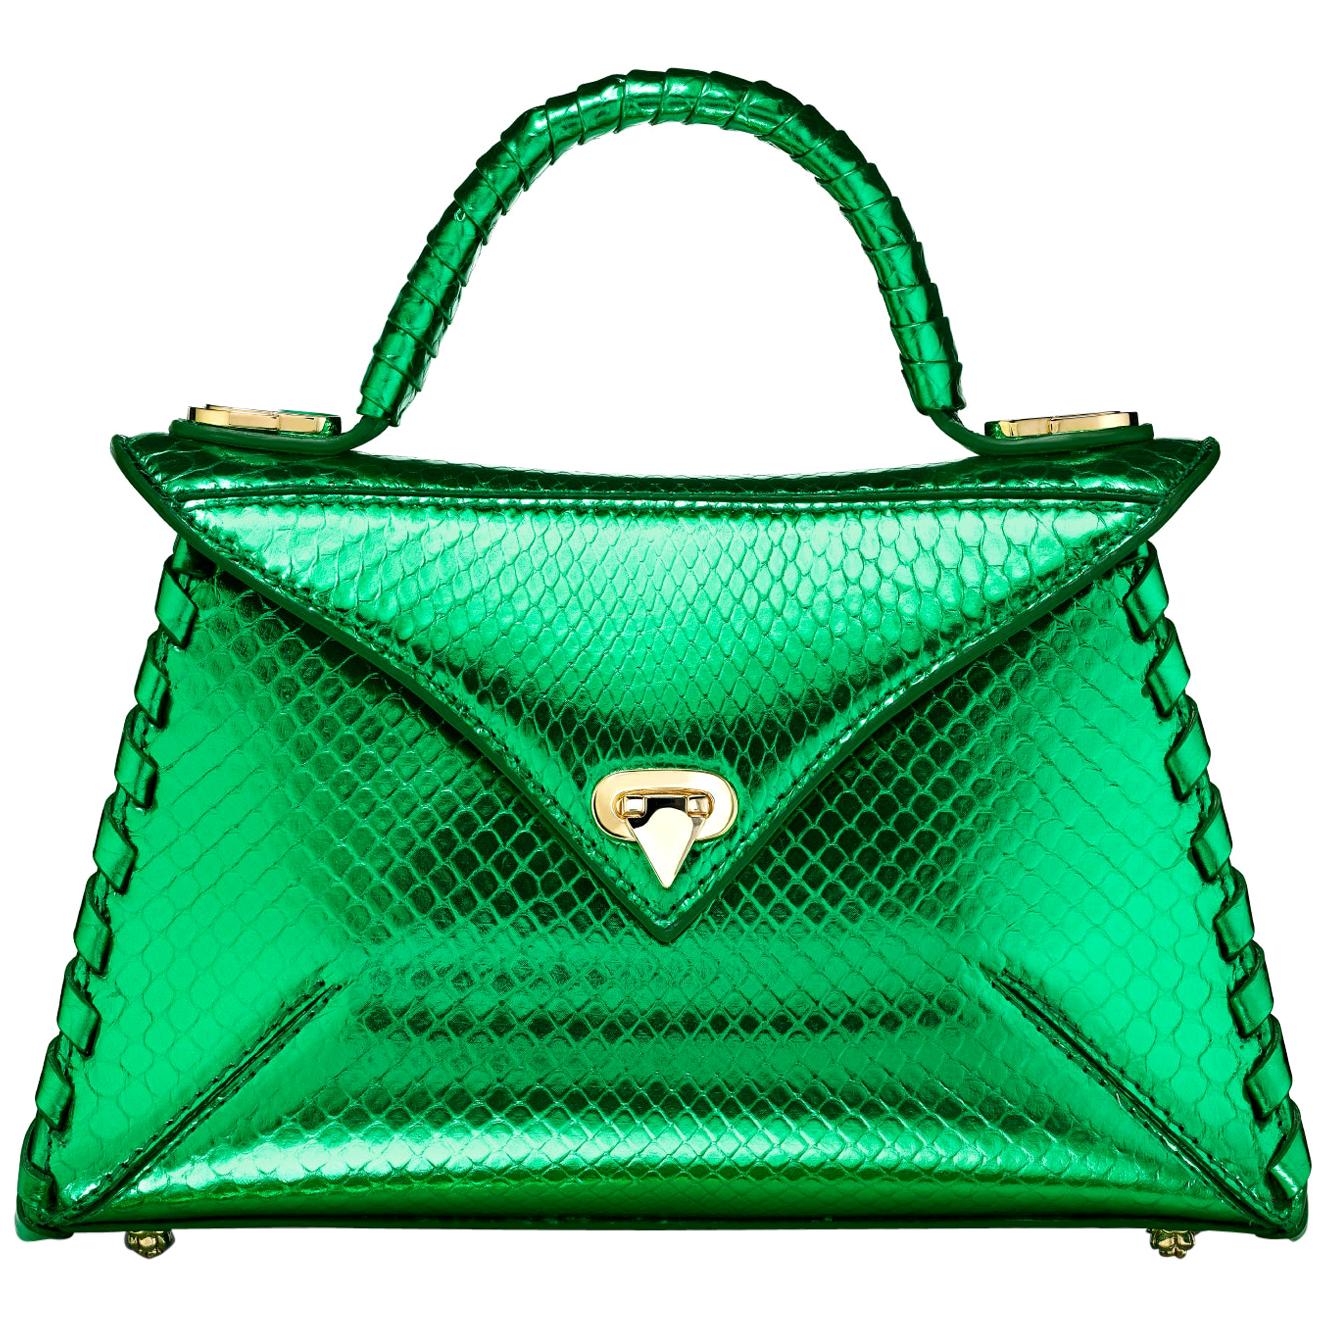 TYLER ELLIS LJ Handbag Small Bright Green Python Gold Hardware